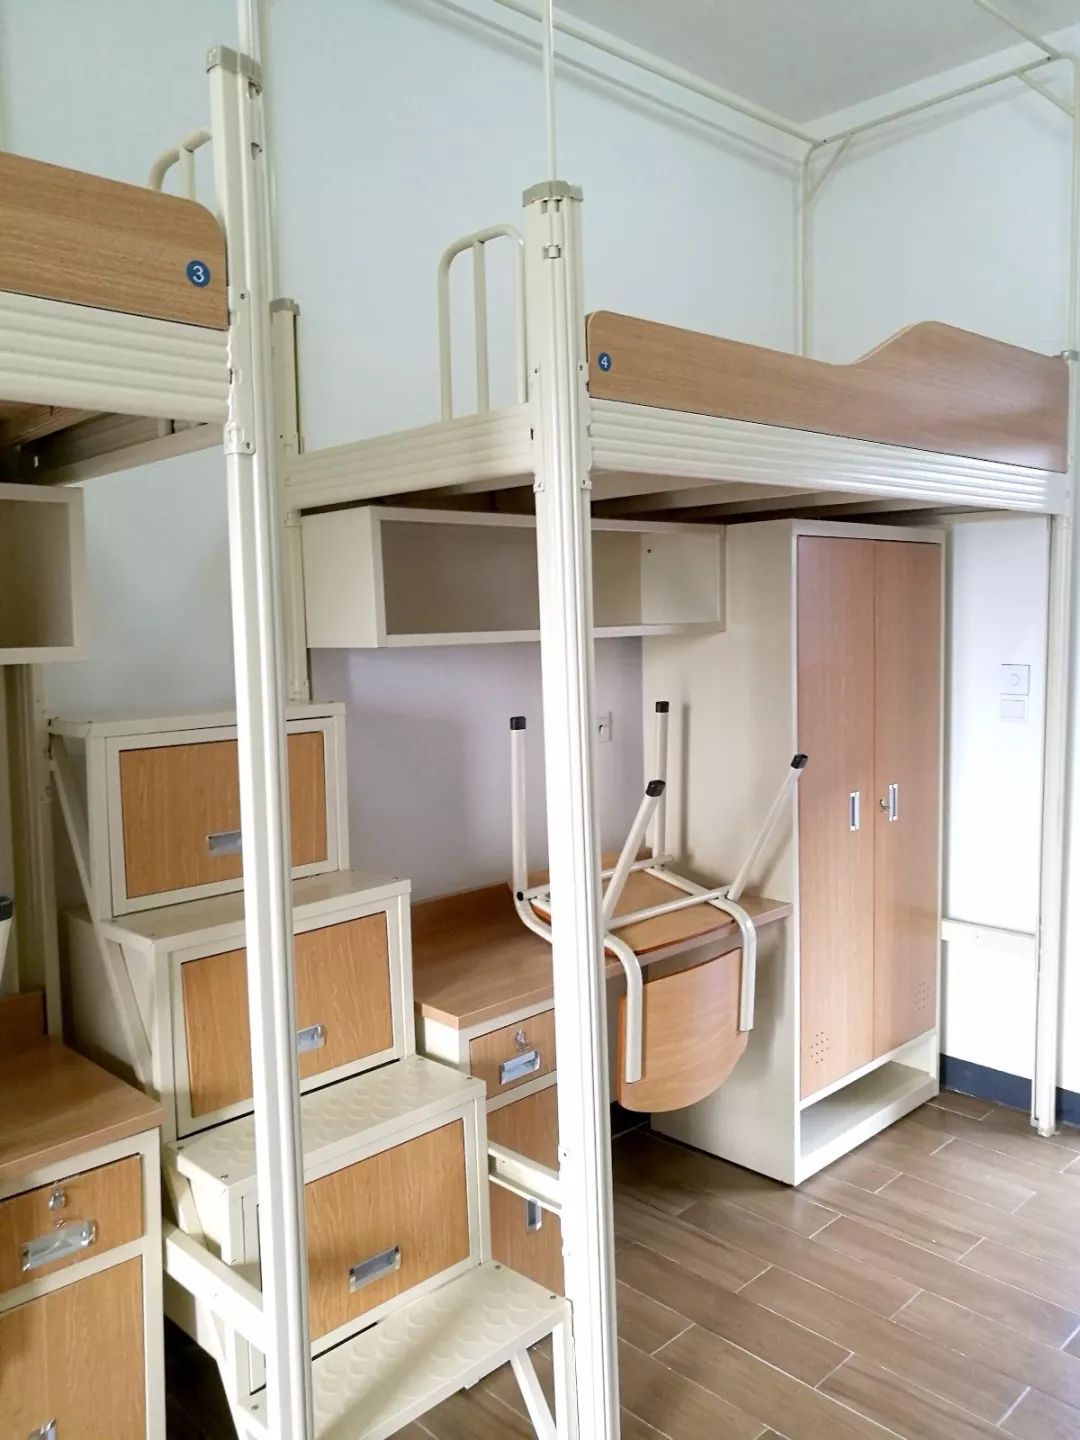 宿舍每间住4人,**下桌(床长198cm,宽90cm),每个床位都配有一个衣柜.